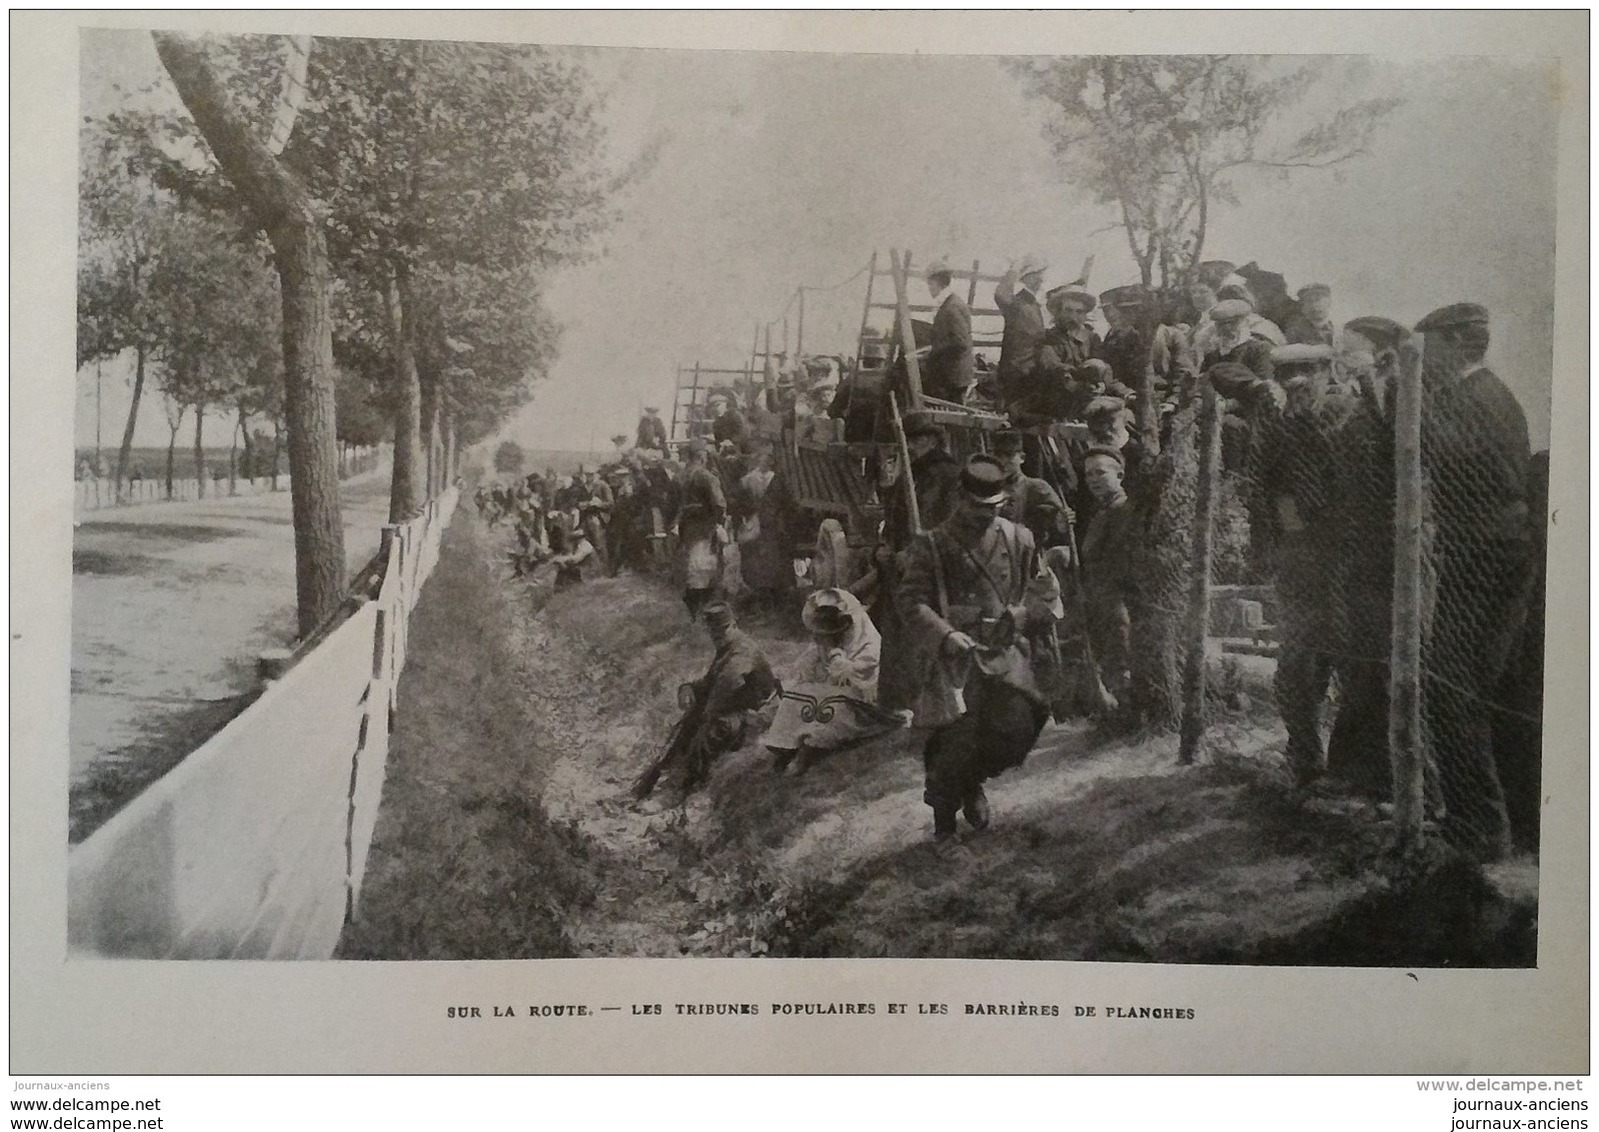 1904 COUPE GORDON BENNETT - MAZAGRAN - VILLERS LE TOURNEUR - MICHELIN - TREGUIER - ARRAS - COLONEL MARCHAND -FONTSÉGUGNE